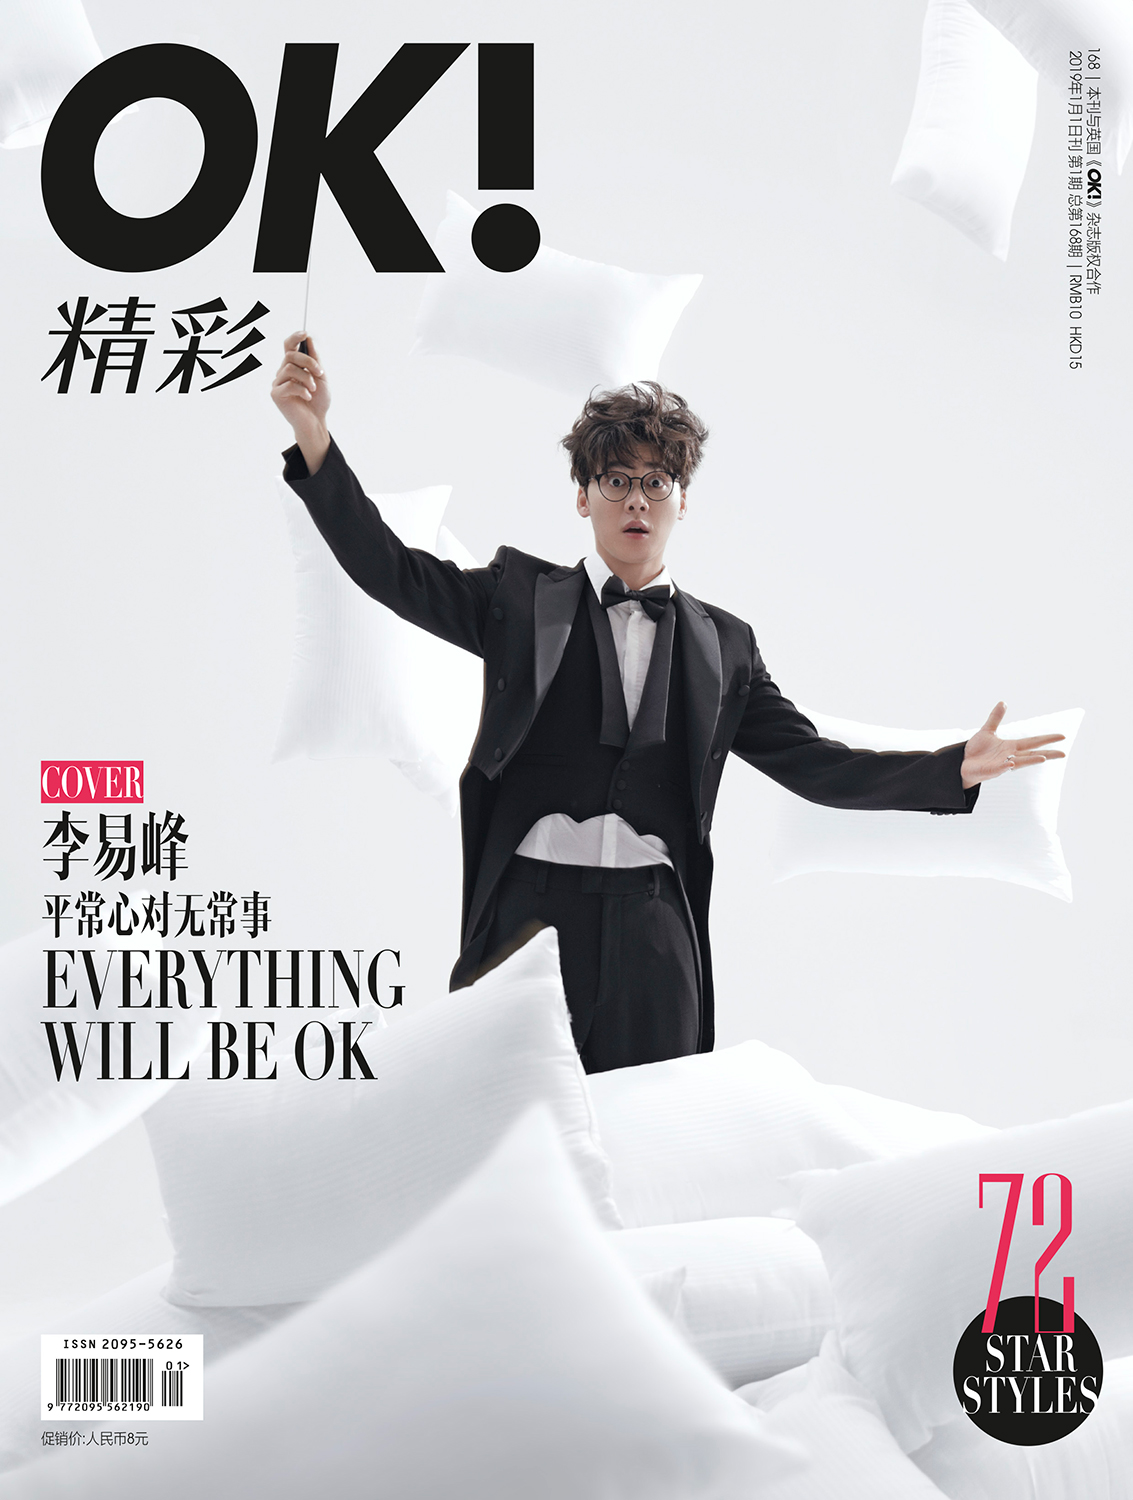 李易峰登杂志开年封面 变身魔法王子演绎百变峰格